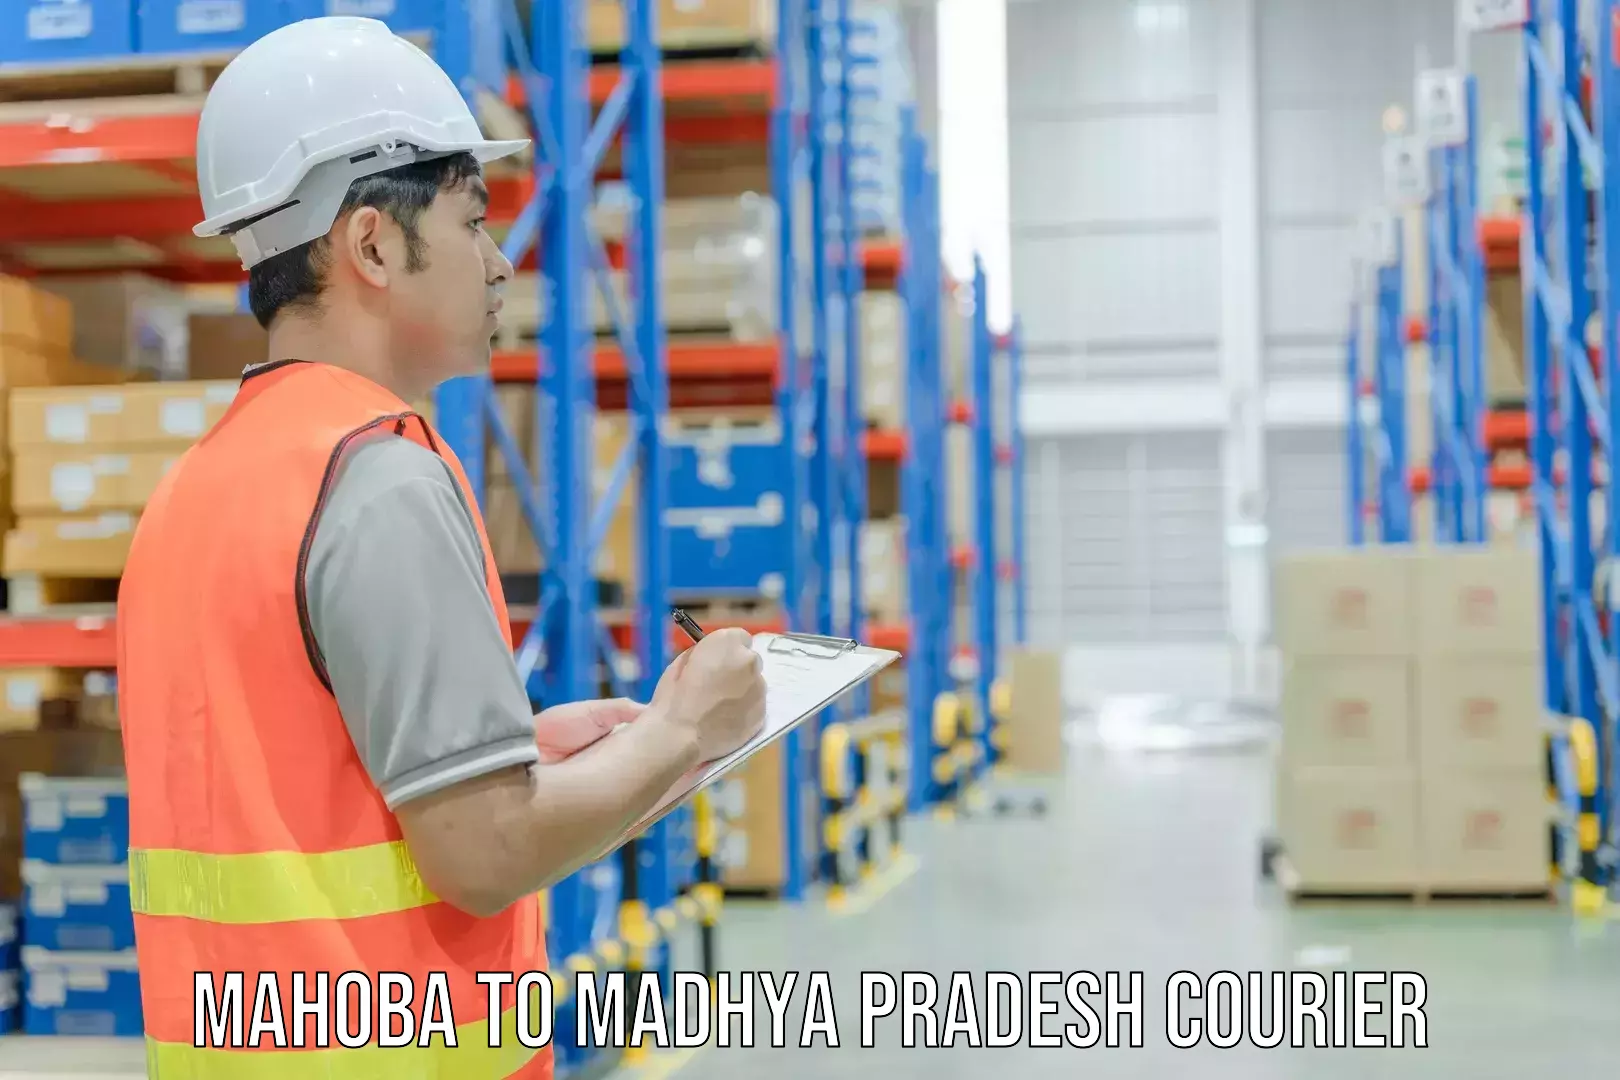 High-capacity shipping options Mahoba to Agar